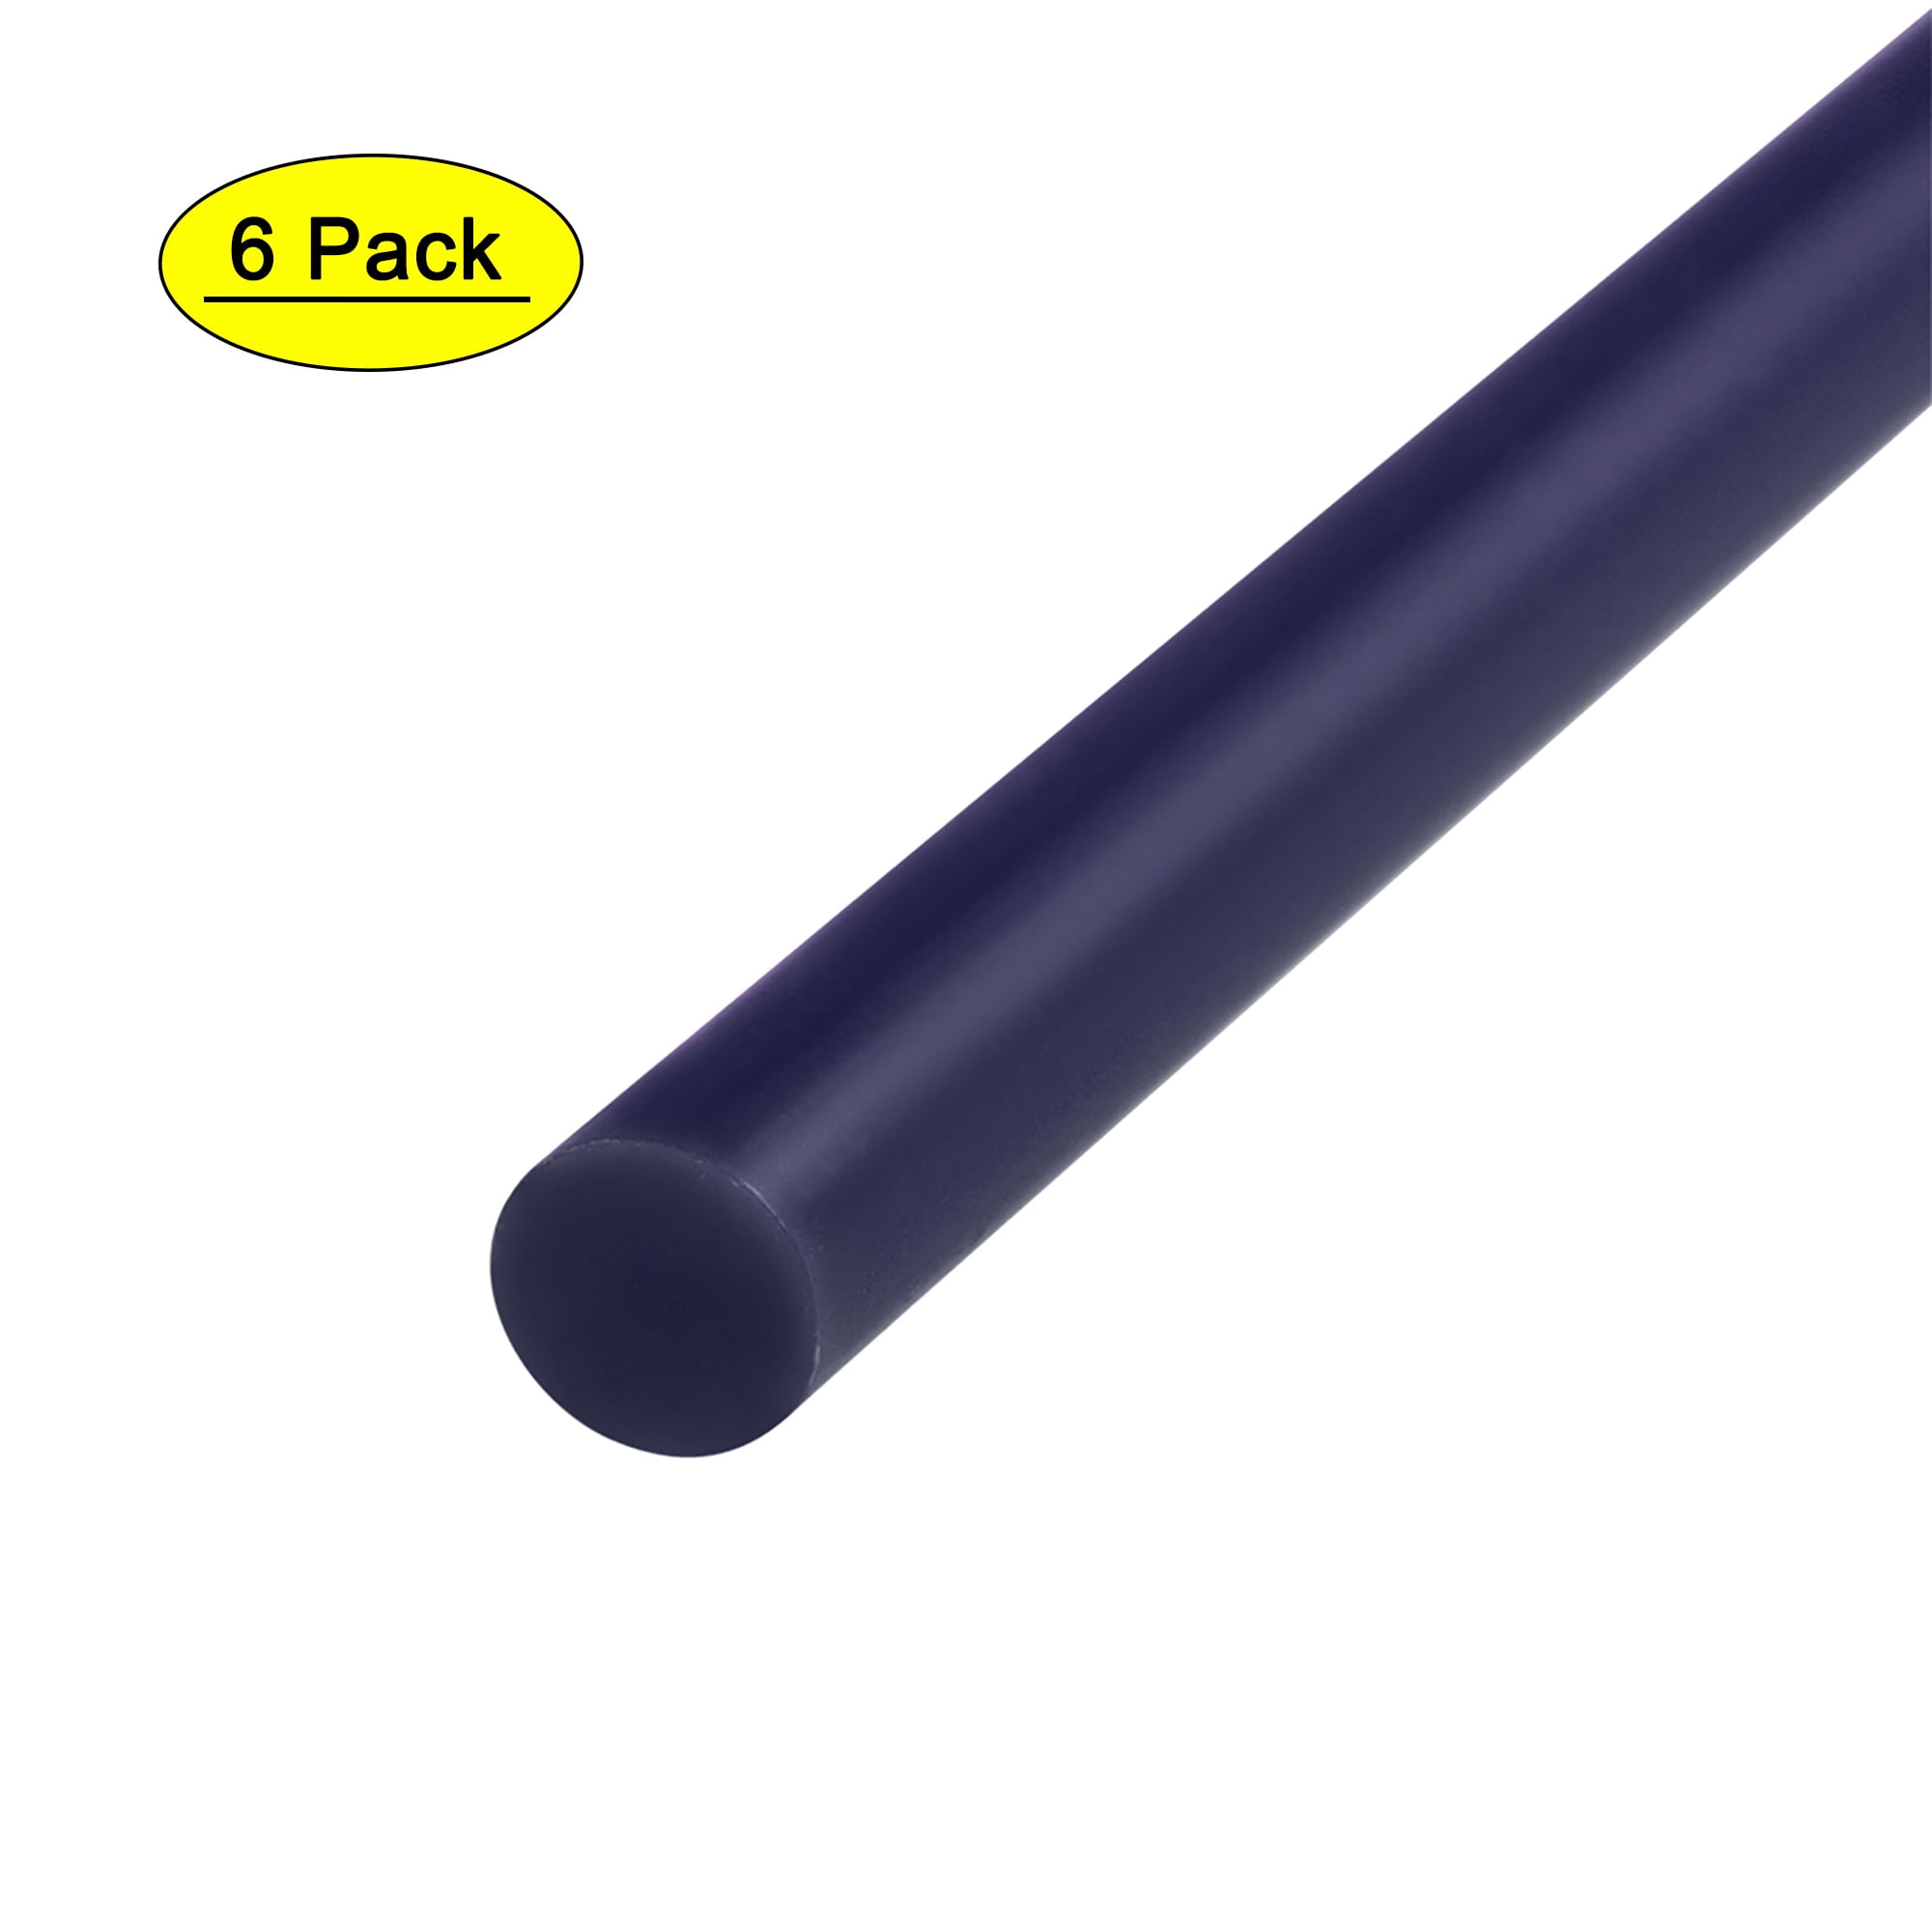 Hot Glue Gun And Sticks Bundle – Blue